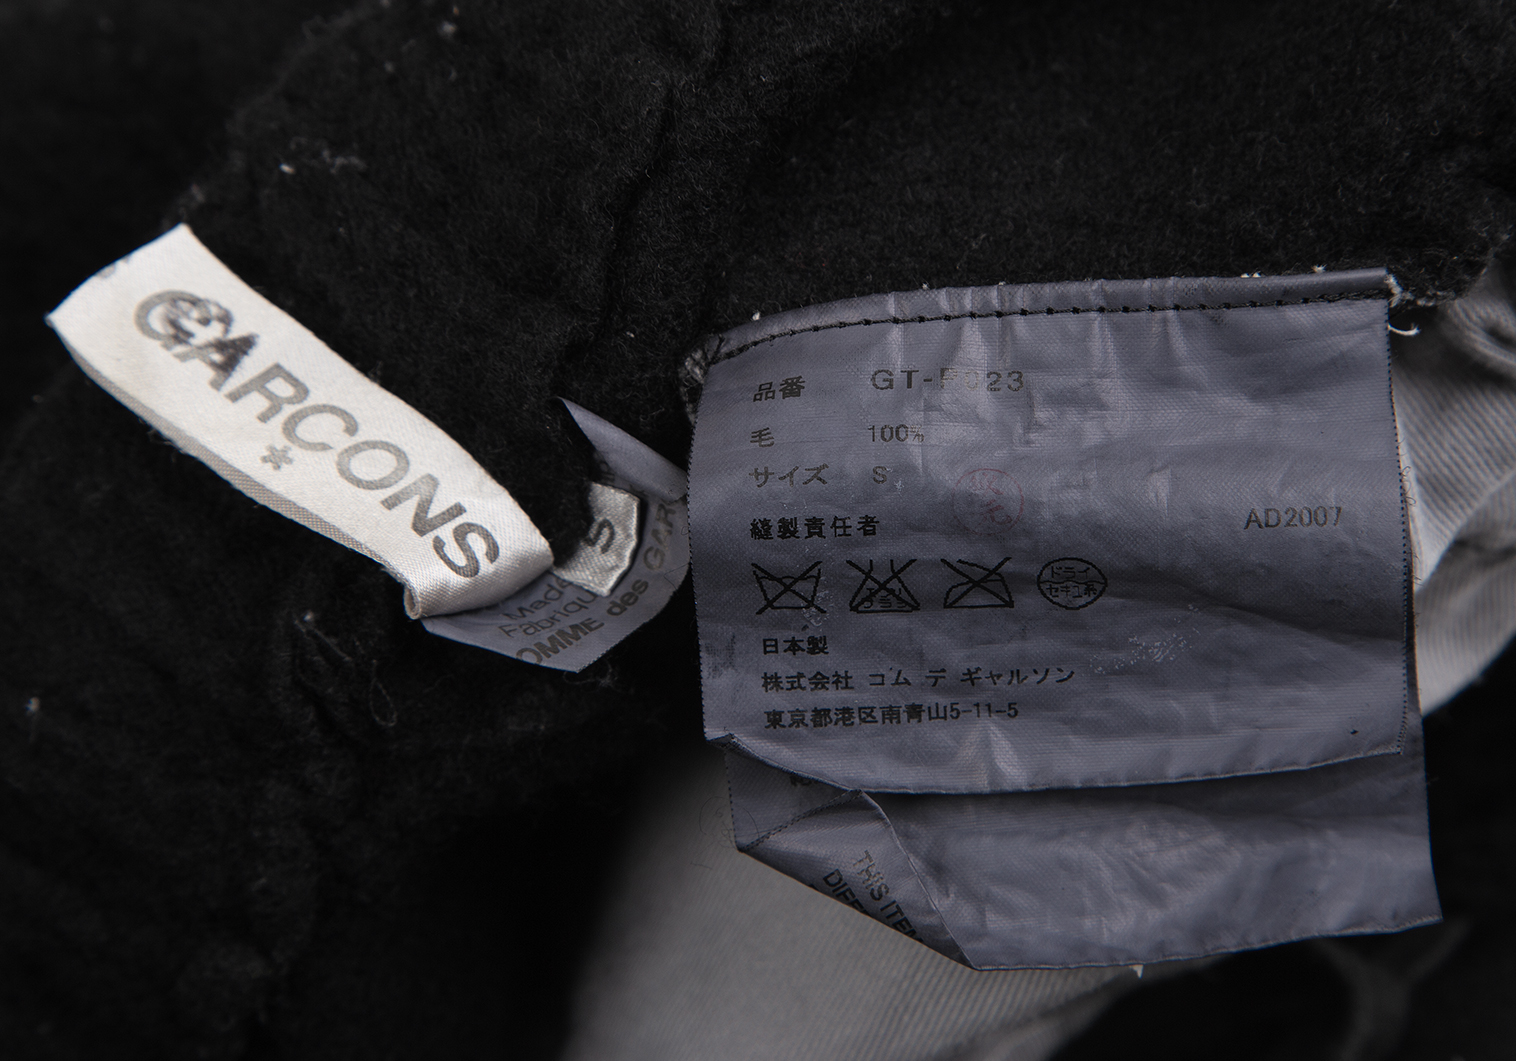 BLACK COMME des GARCONSブラックコムデギャルソン 縮絨ウール 裾カットデザインパンツ【L】【LPTA71777】パンツ